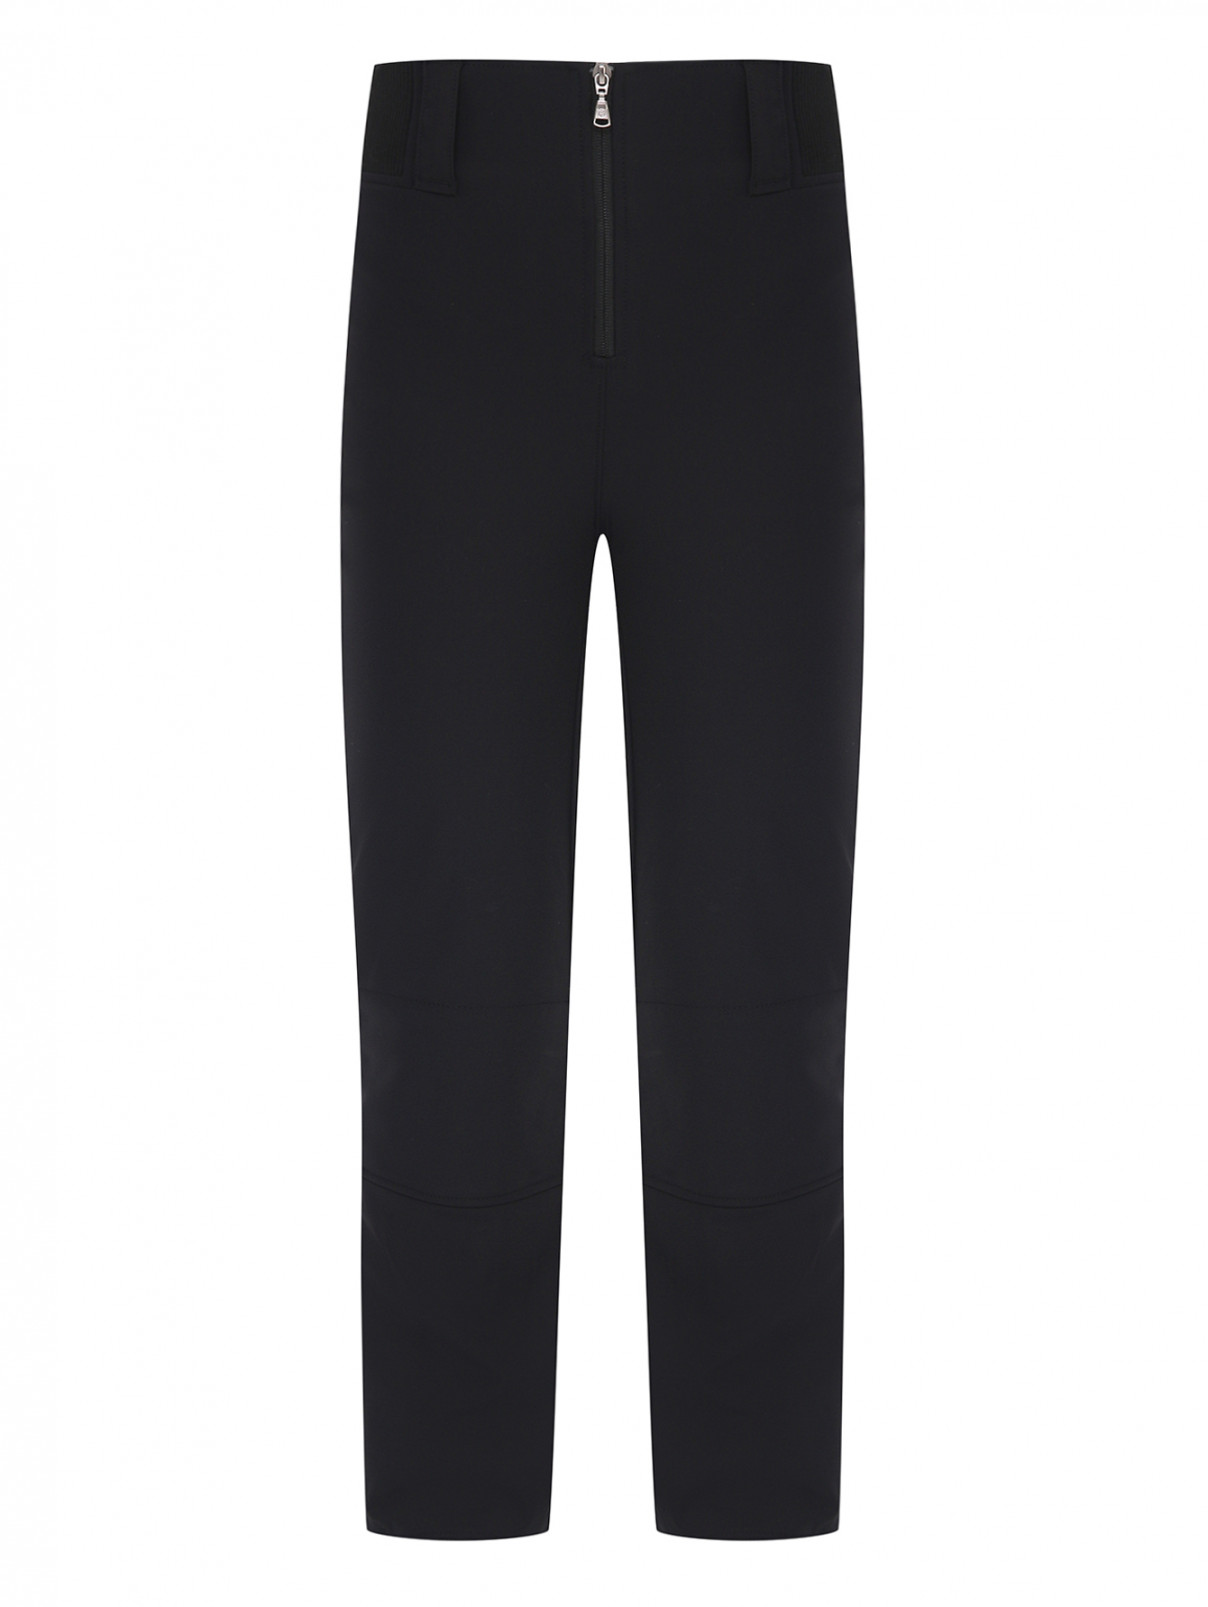 Утепленные брюки на молнии Poivre Blanc  –  Общий вид  – Цвет:  Черный